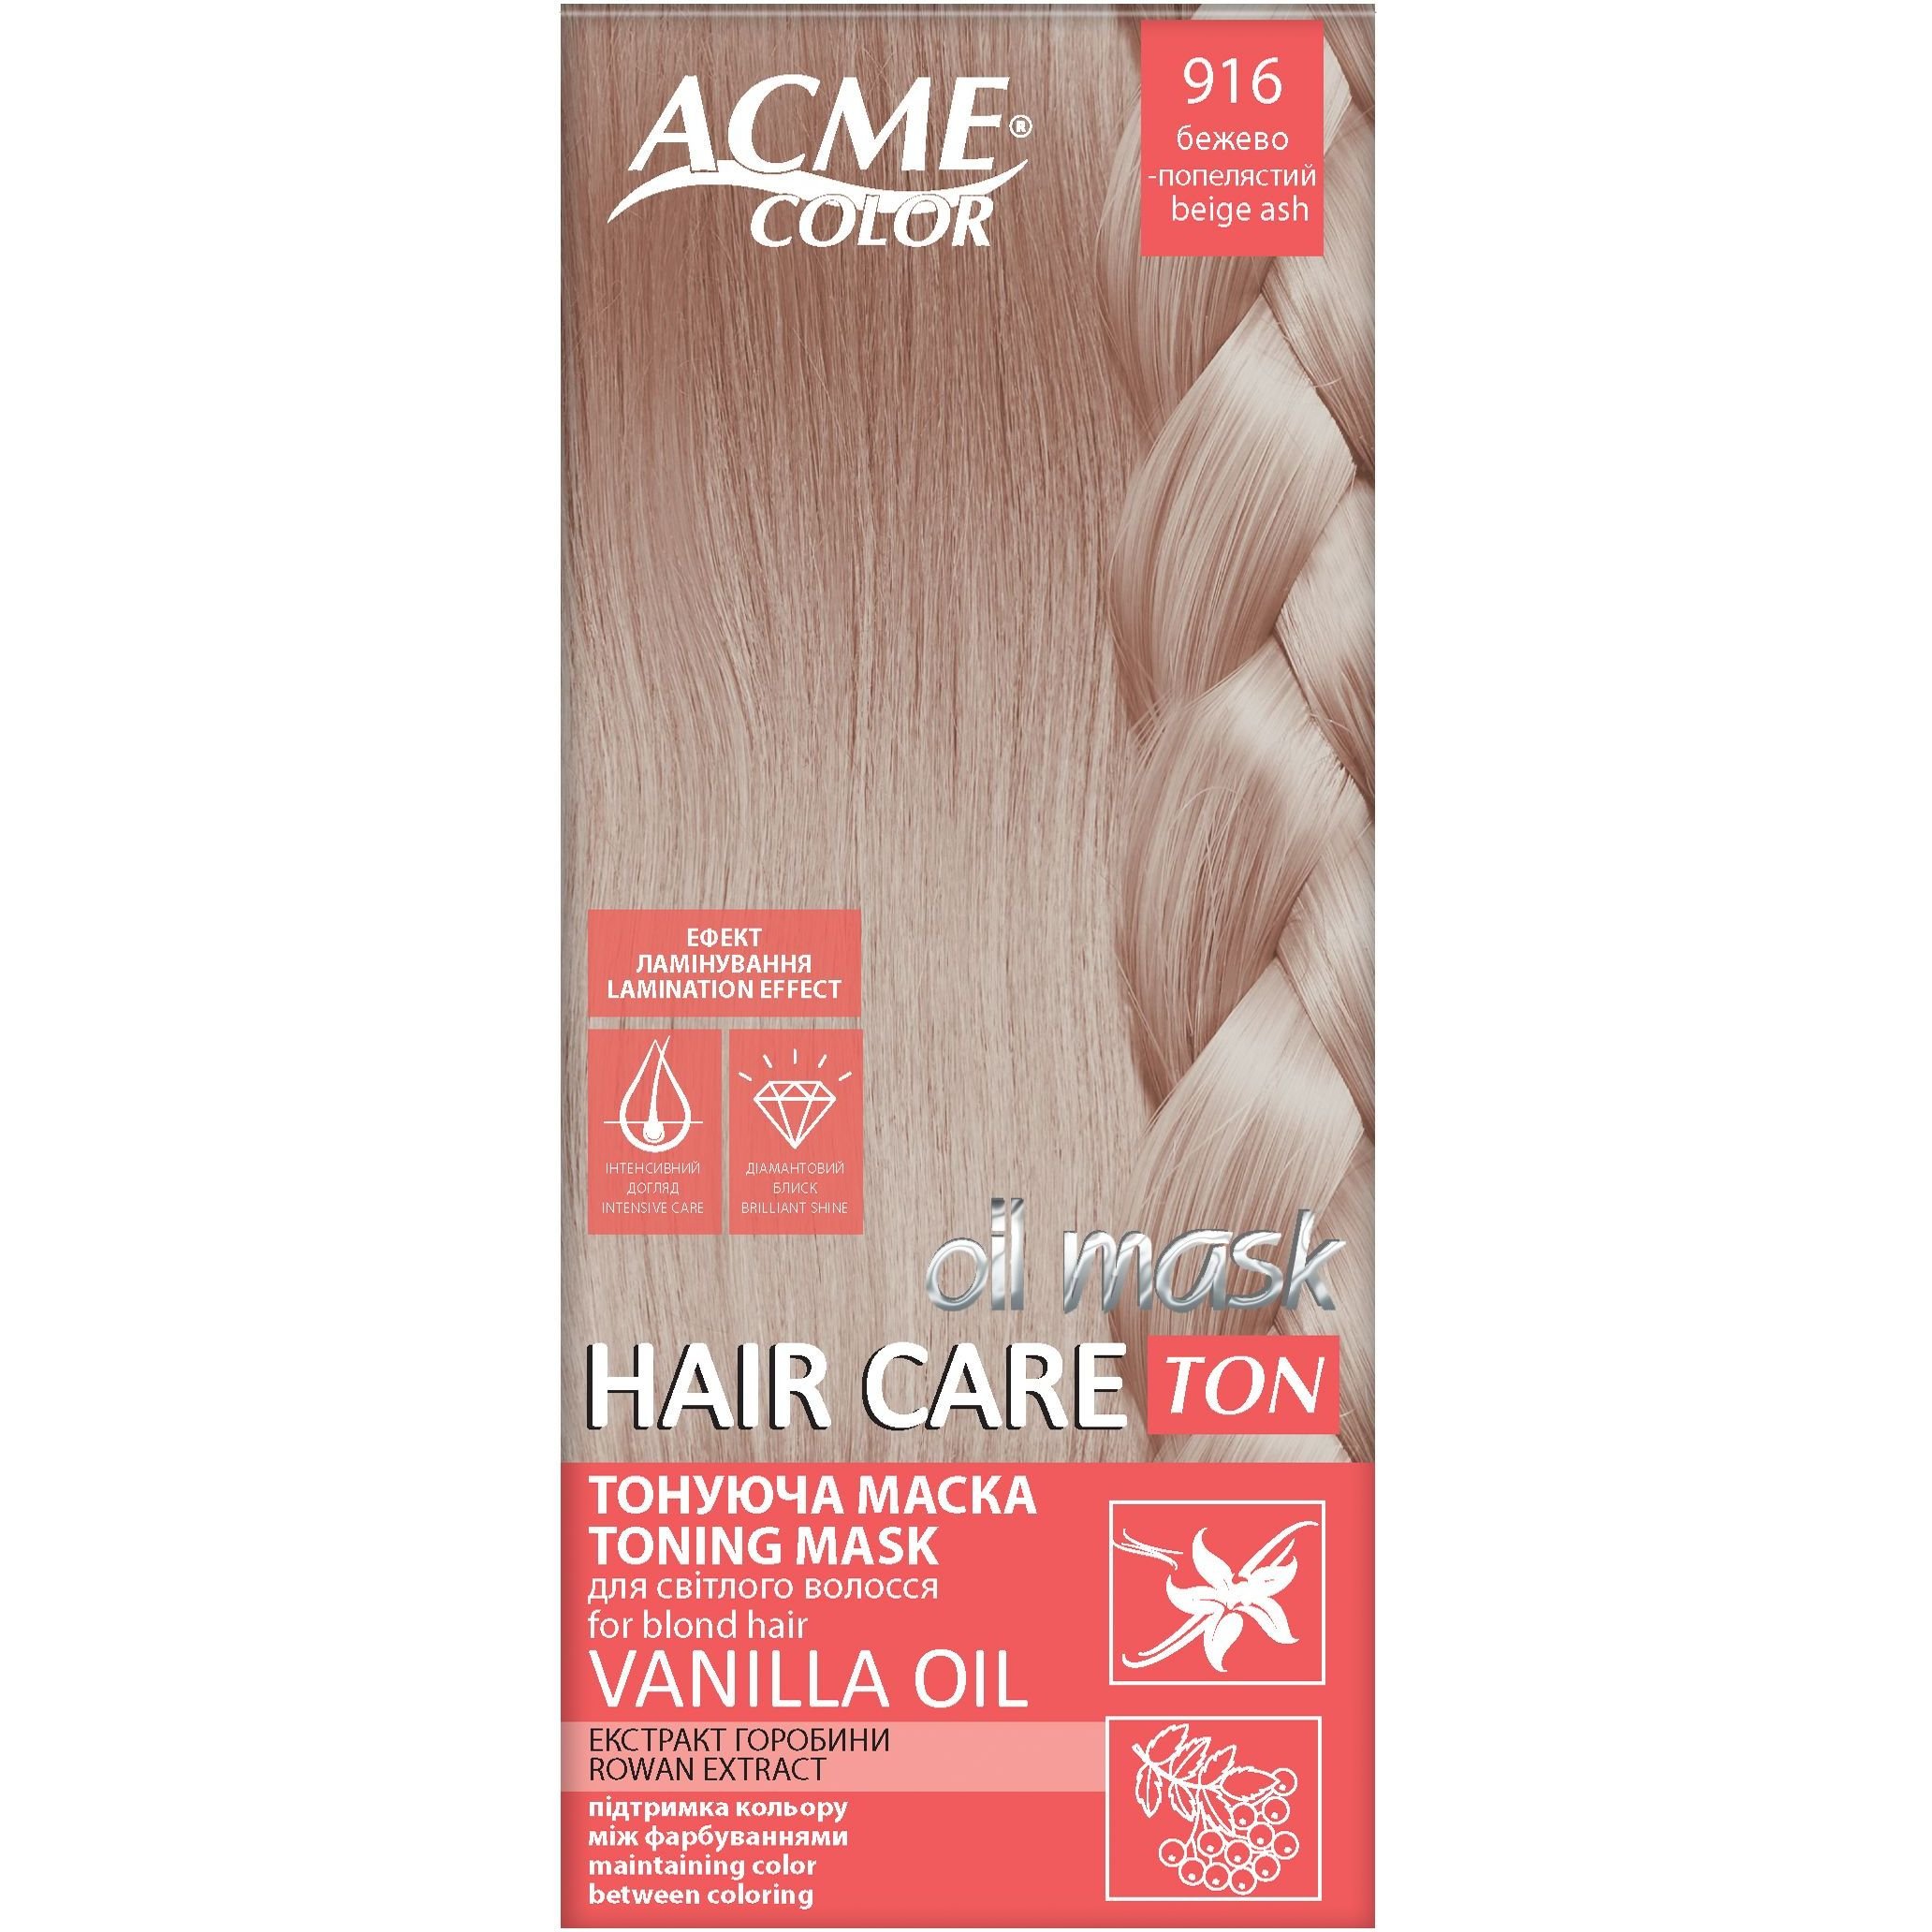 Тонуюча маска для волосся Acme Color Hair Care Ton oil mask, відтінок 916, бежево-попелястий, 30 мл - фото 1